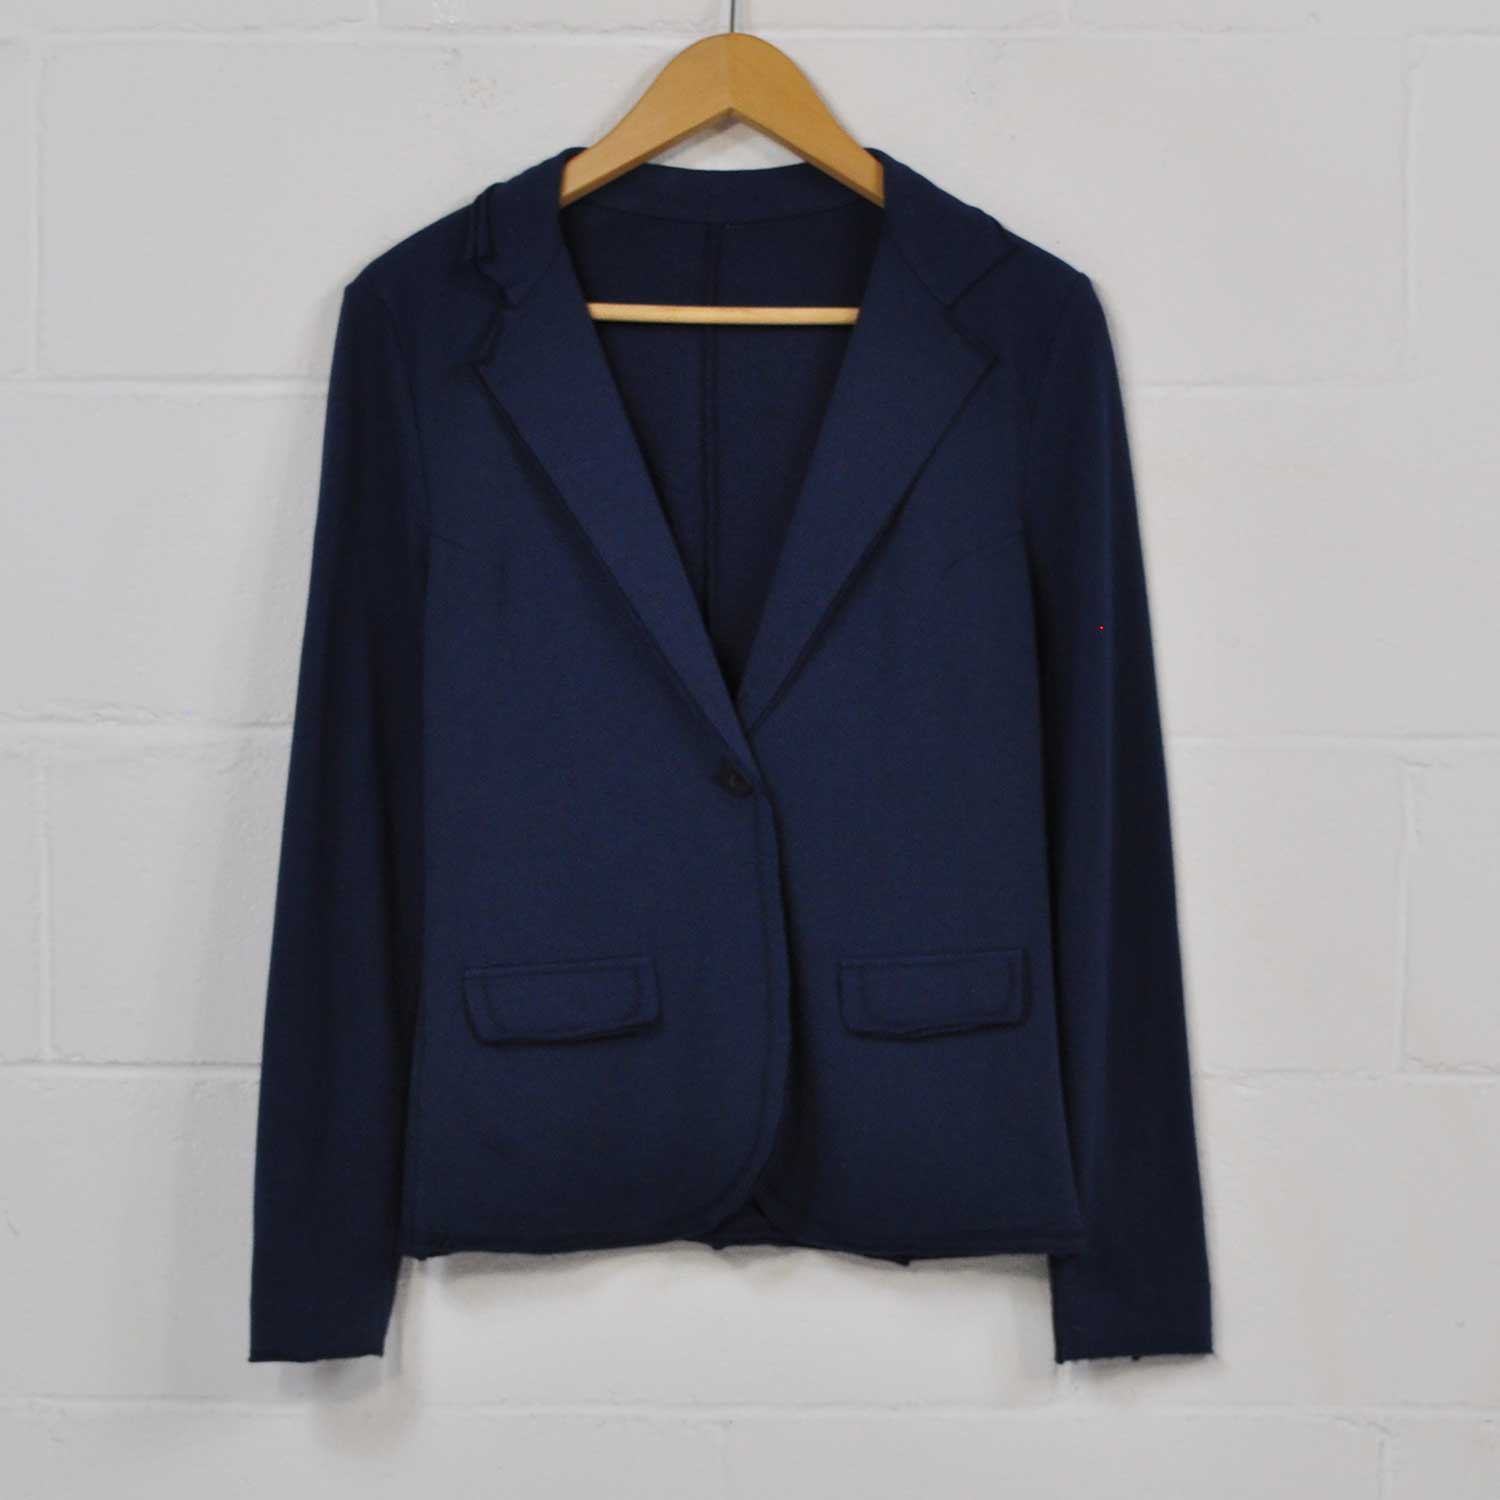 Blue cotton suit jacket